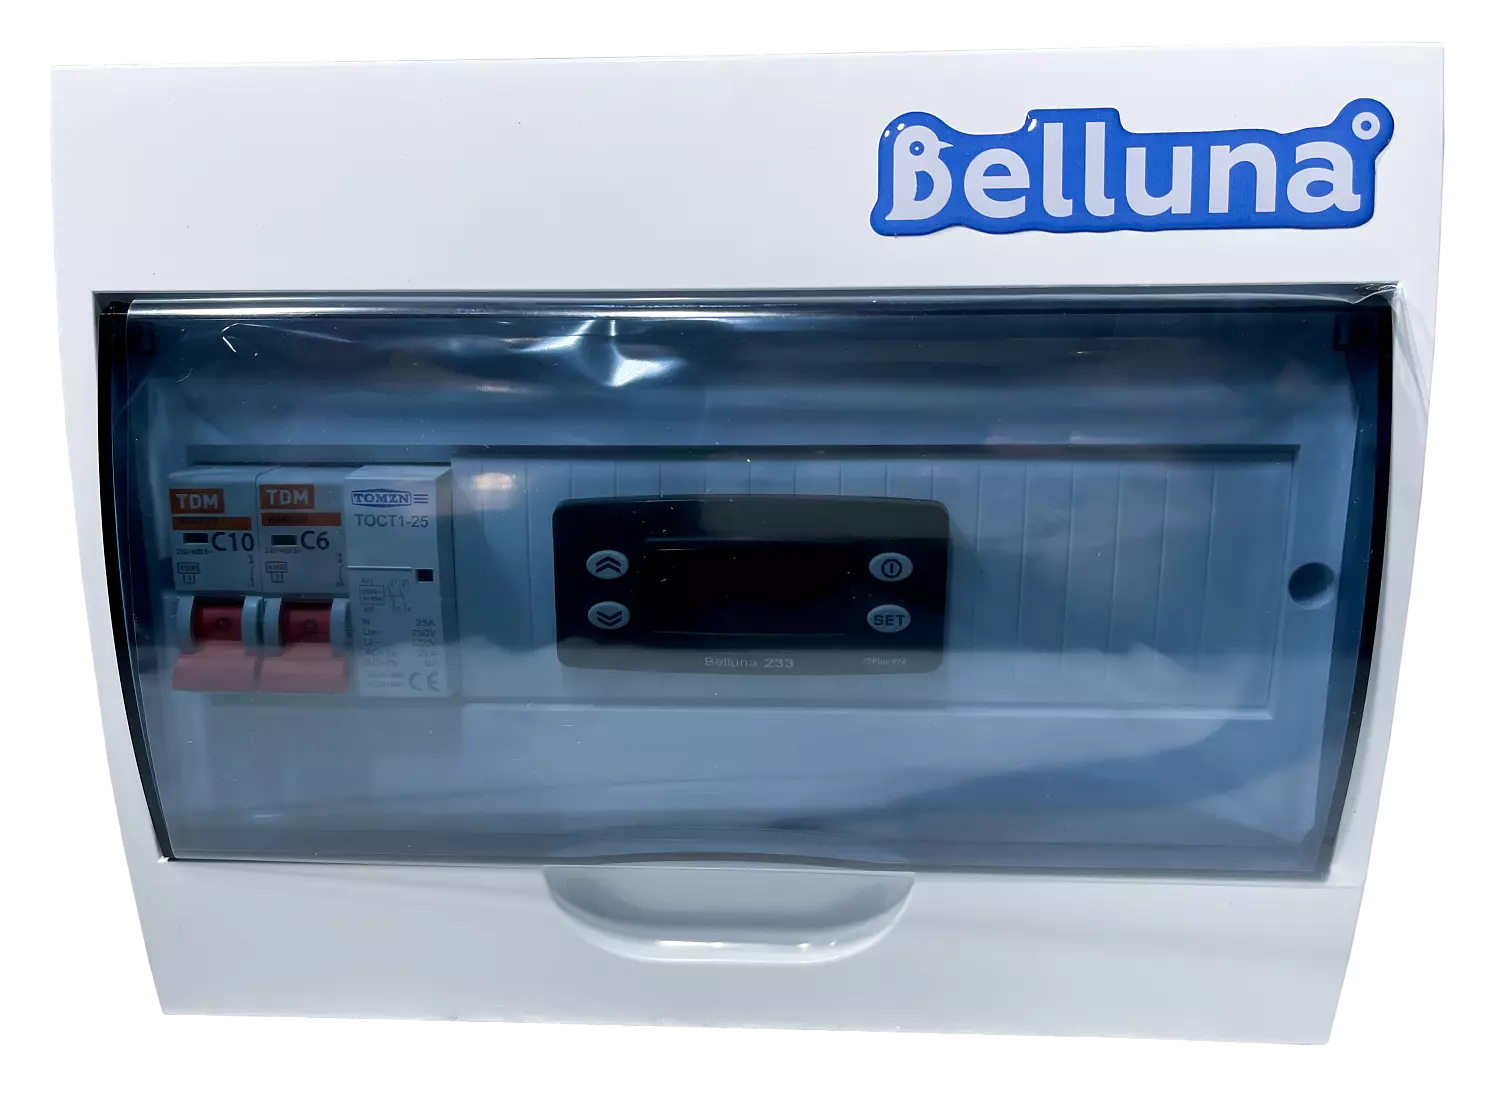 сплит-система Belluna U310 Тамбов